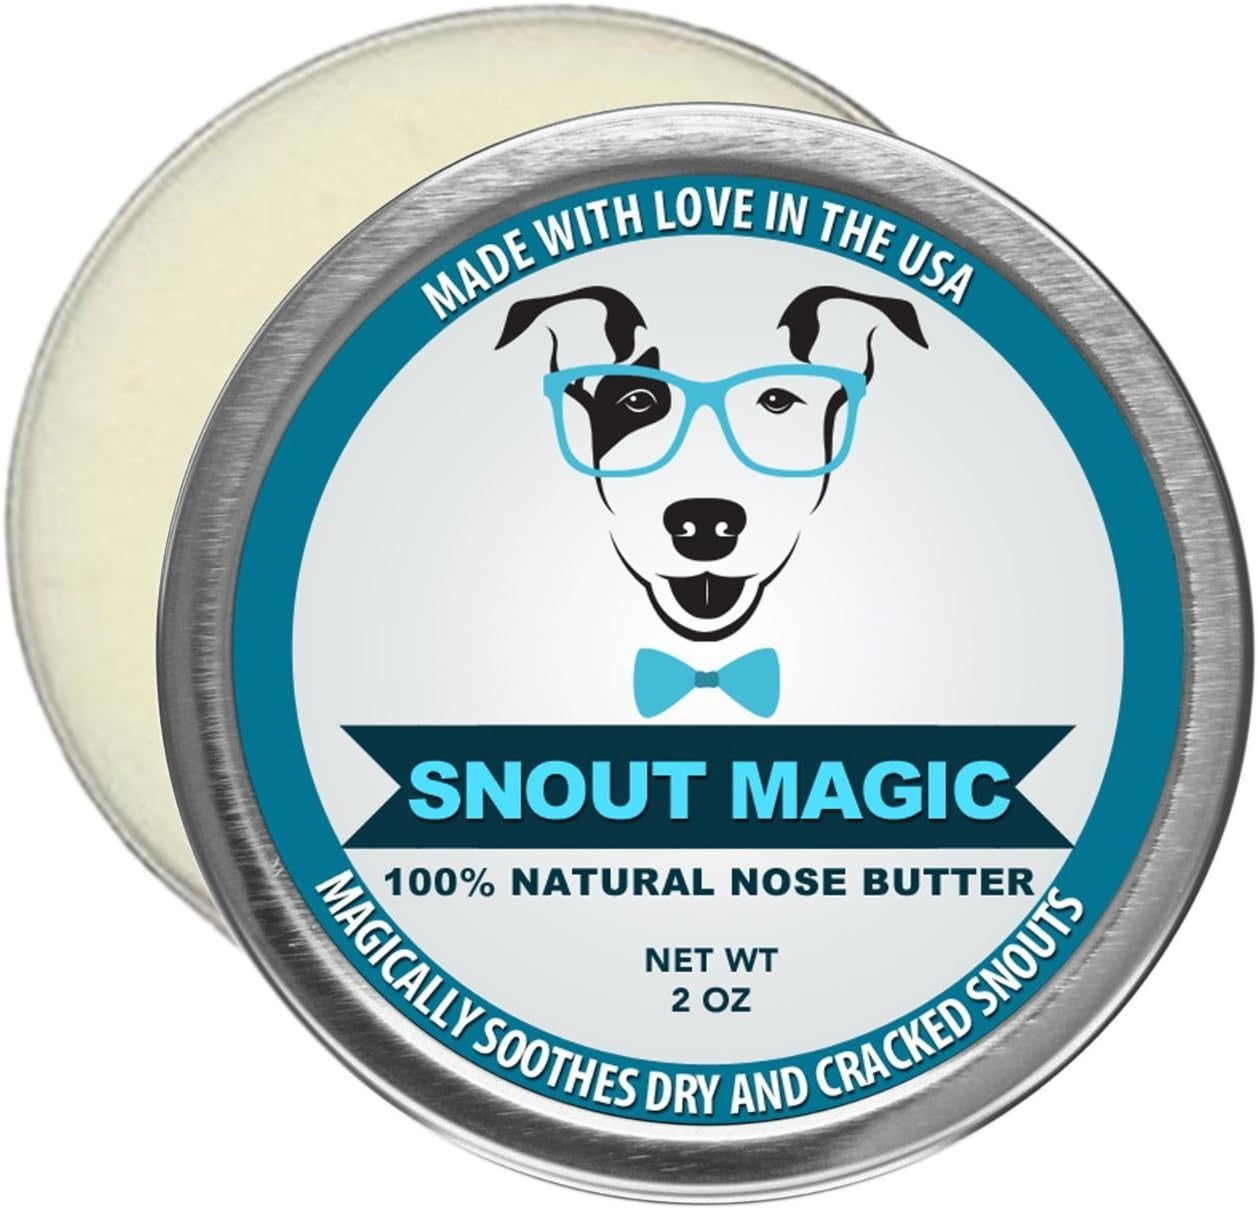 10. Snout Magic: 100% biologische en natuurlijke hondenneusboter